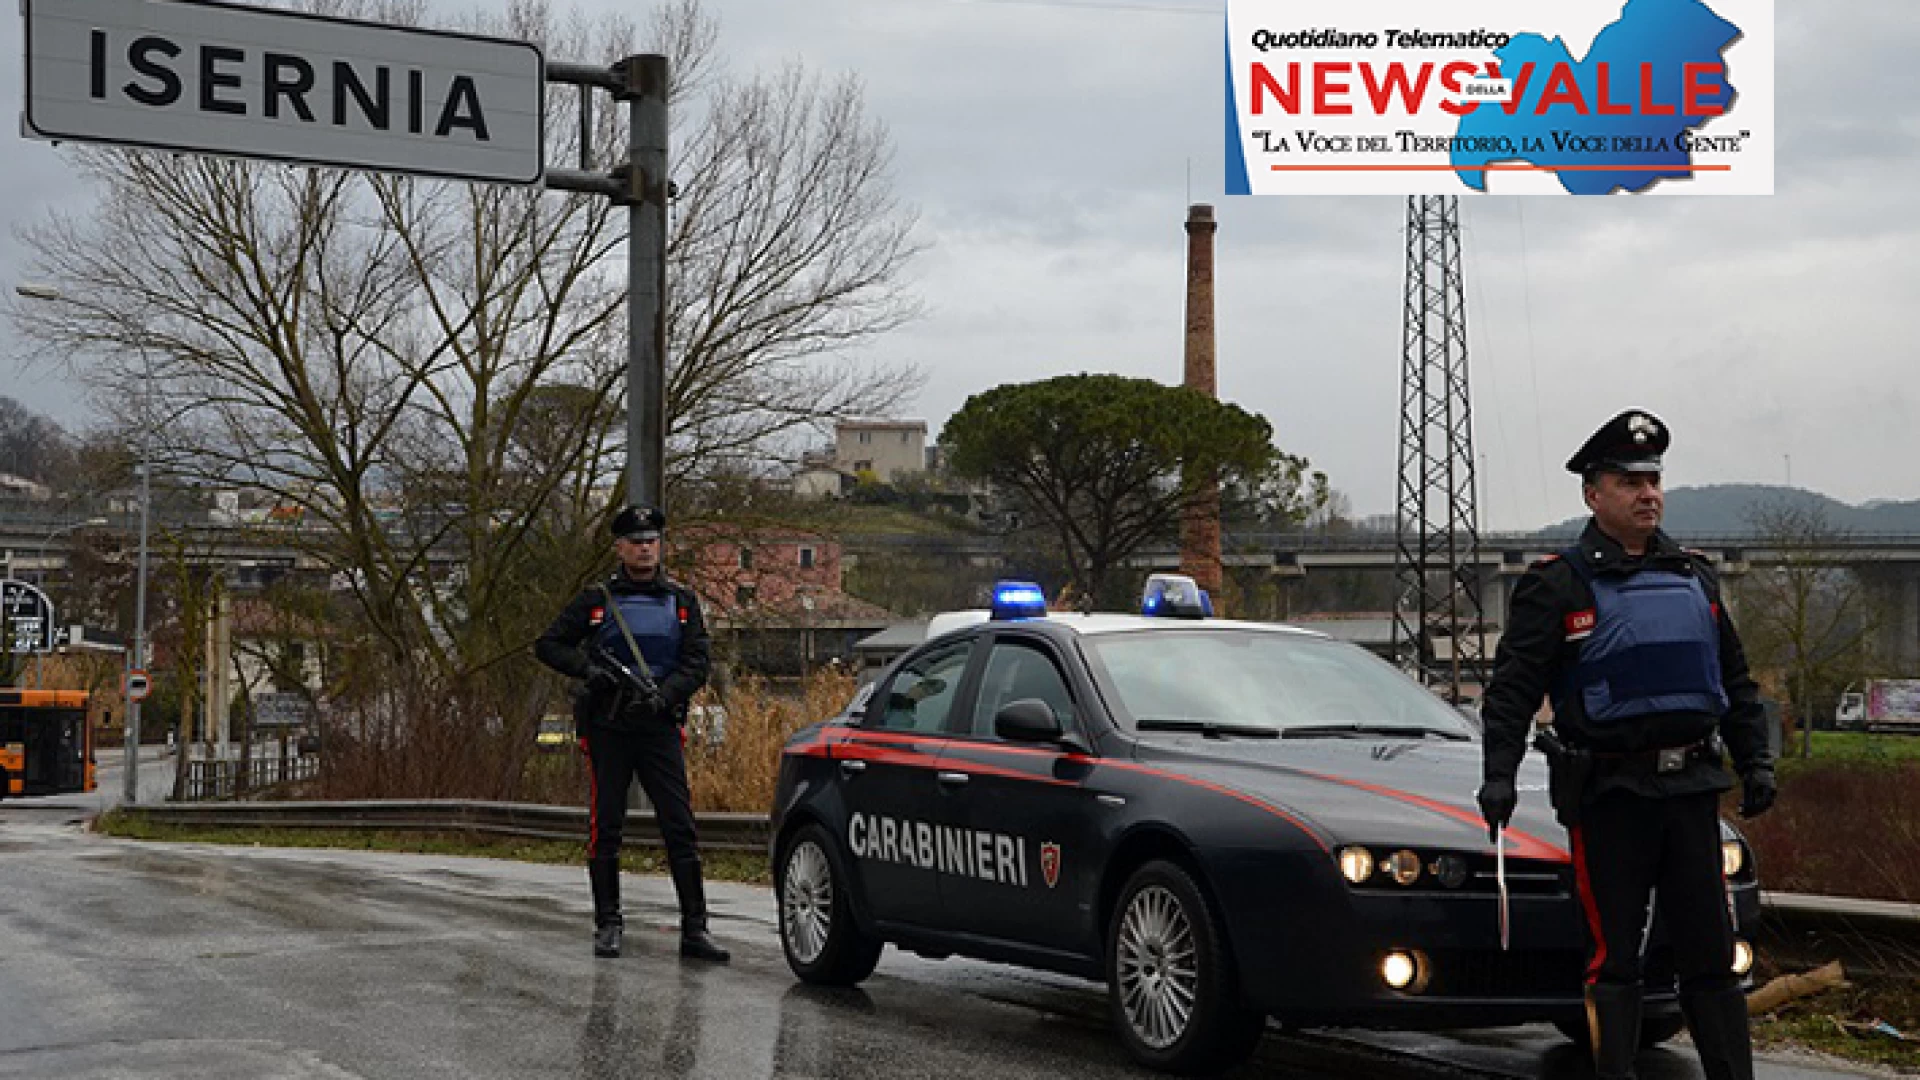 Cantalupo nel Sannio:  I Carabinieri arrestano un 32enne Rom che deve scontare un cumulo di pena di  due anni.